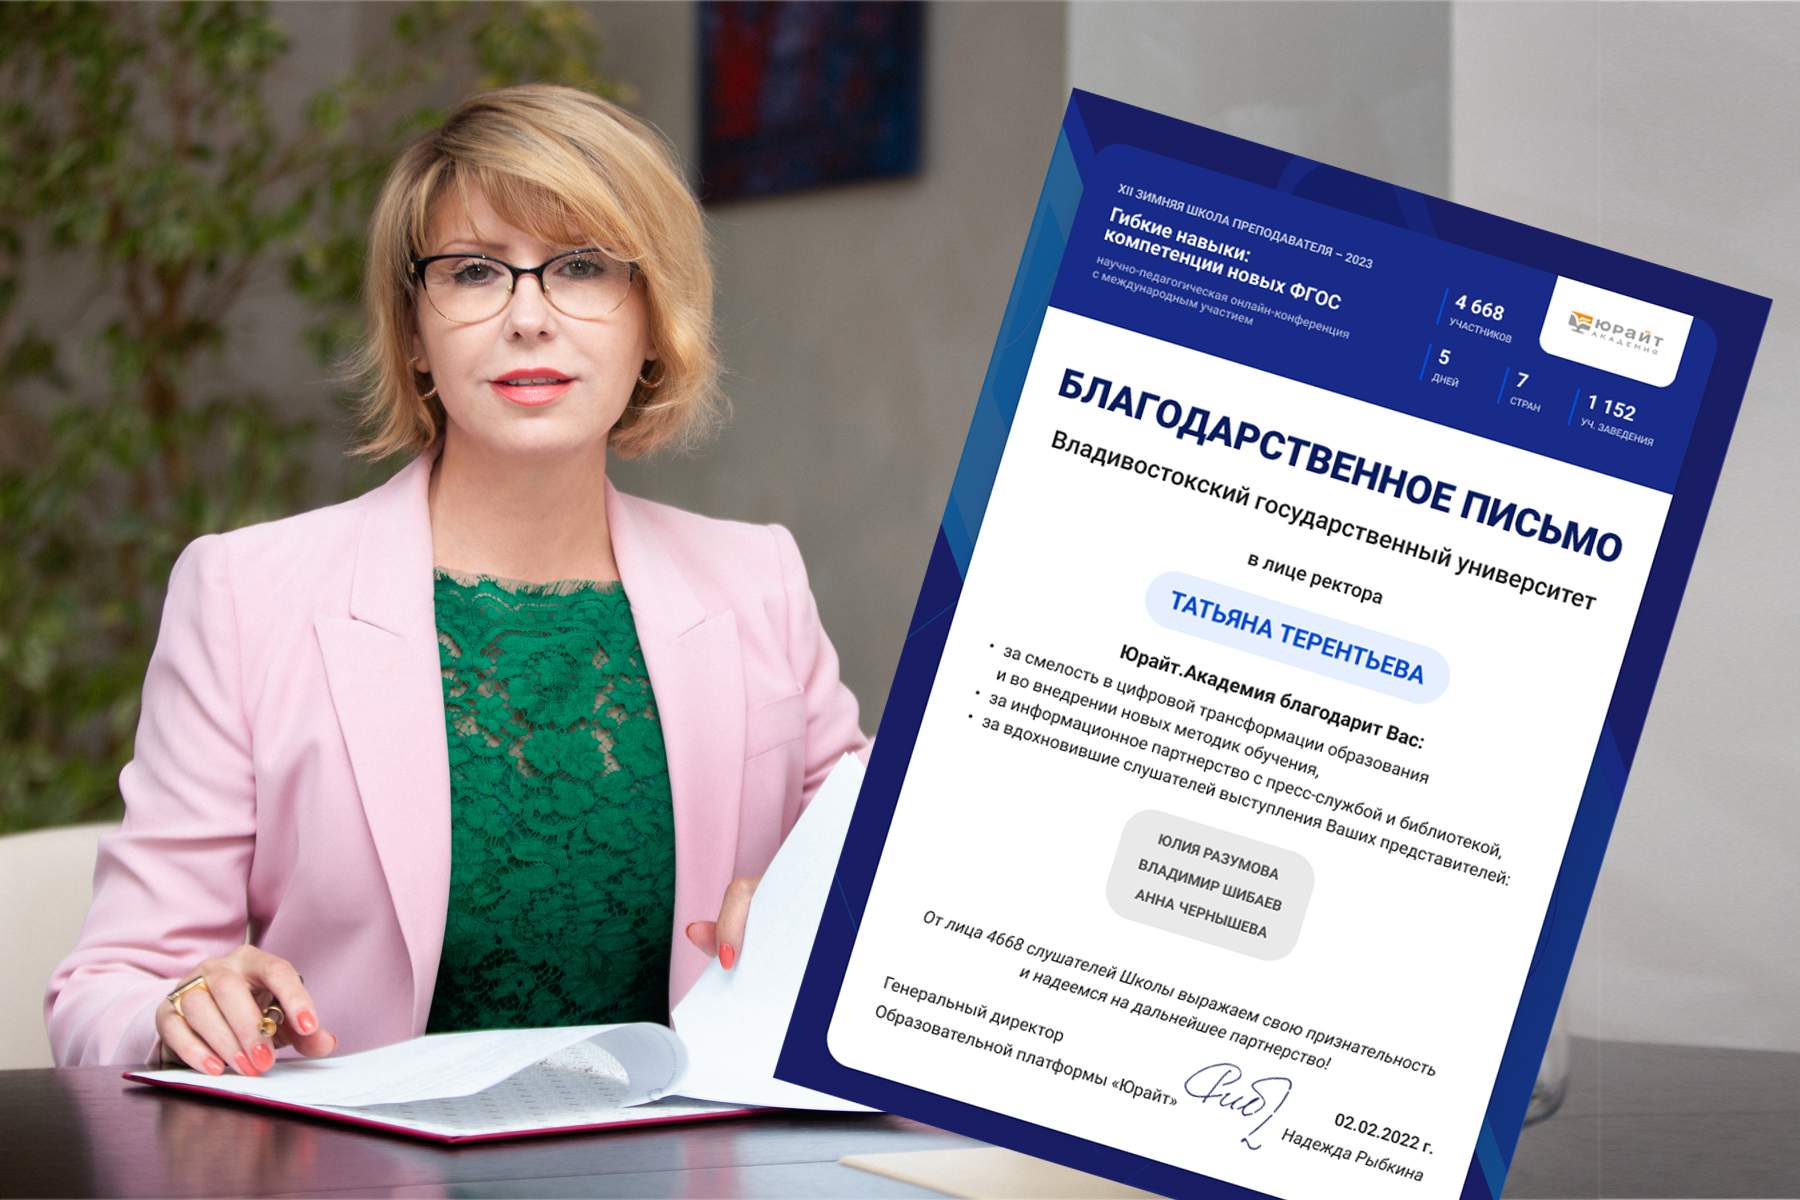 Ректор ВВГУ Татьяна Терентьева получила благодарность образовательного проекта «Юрайт»